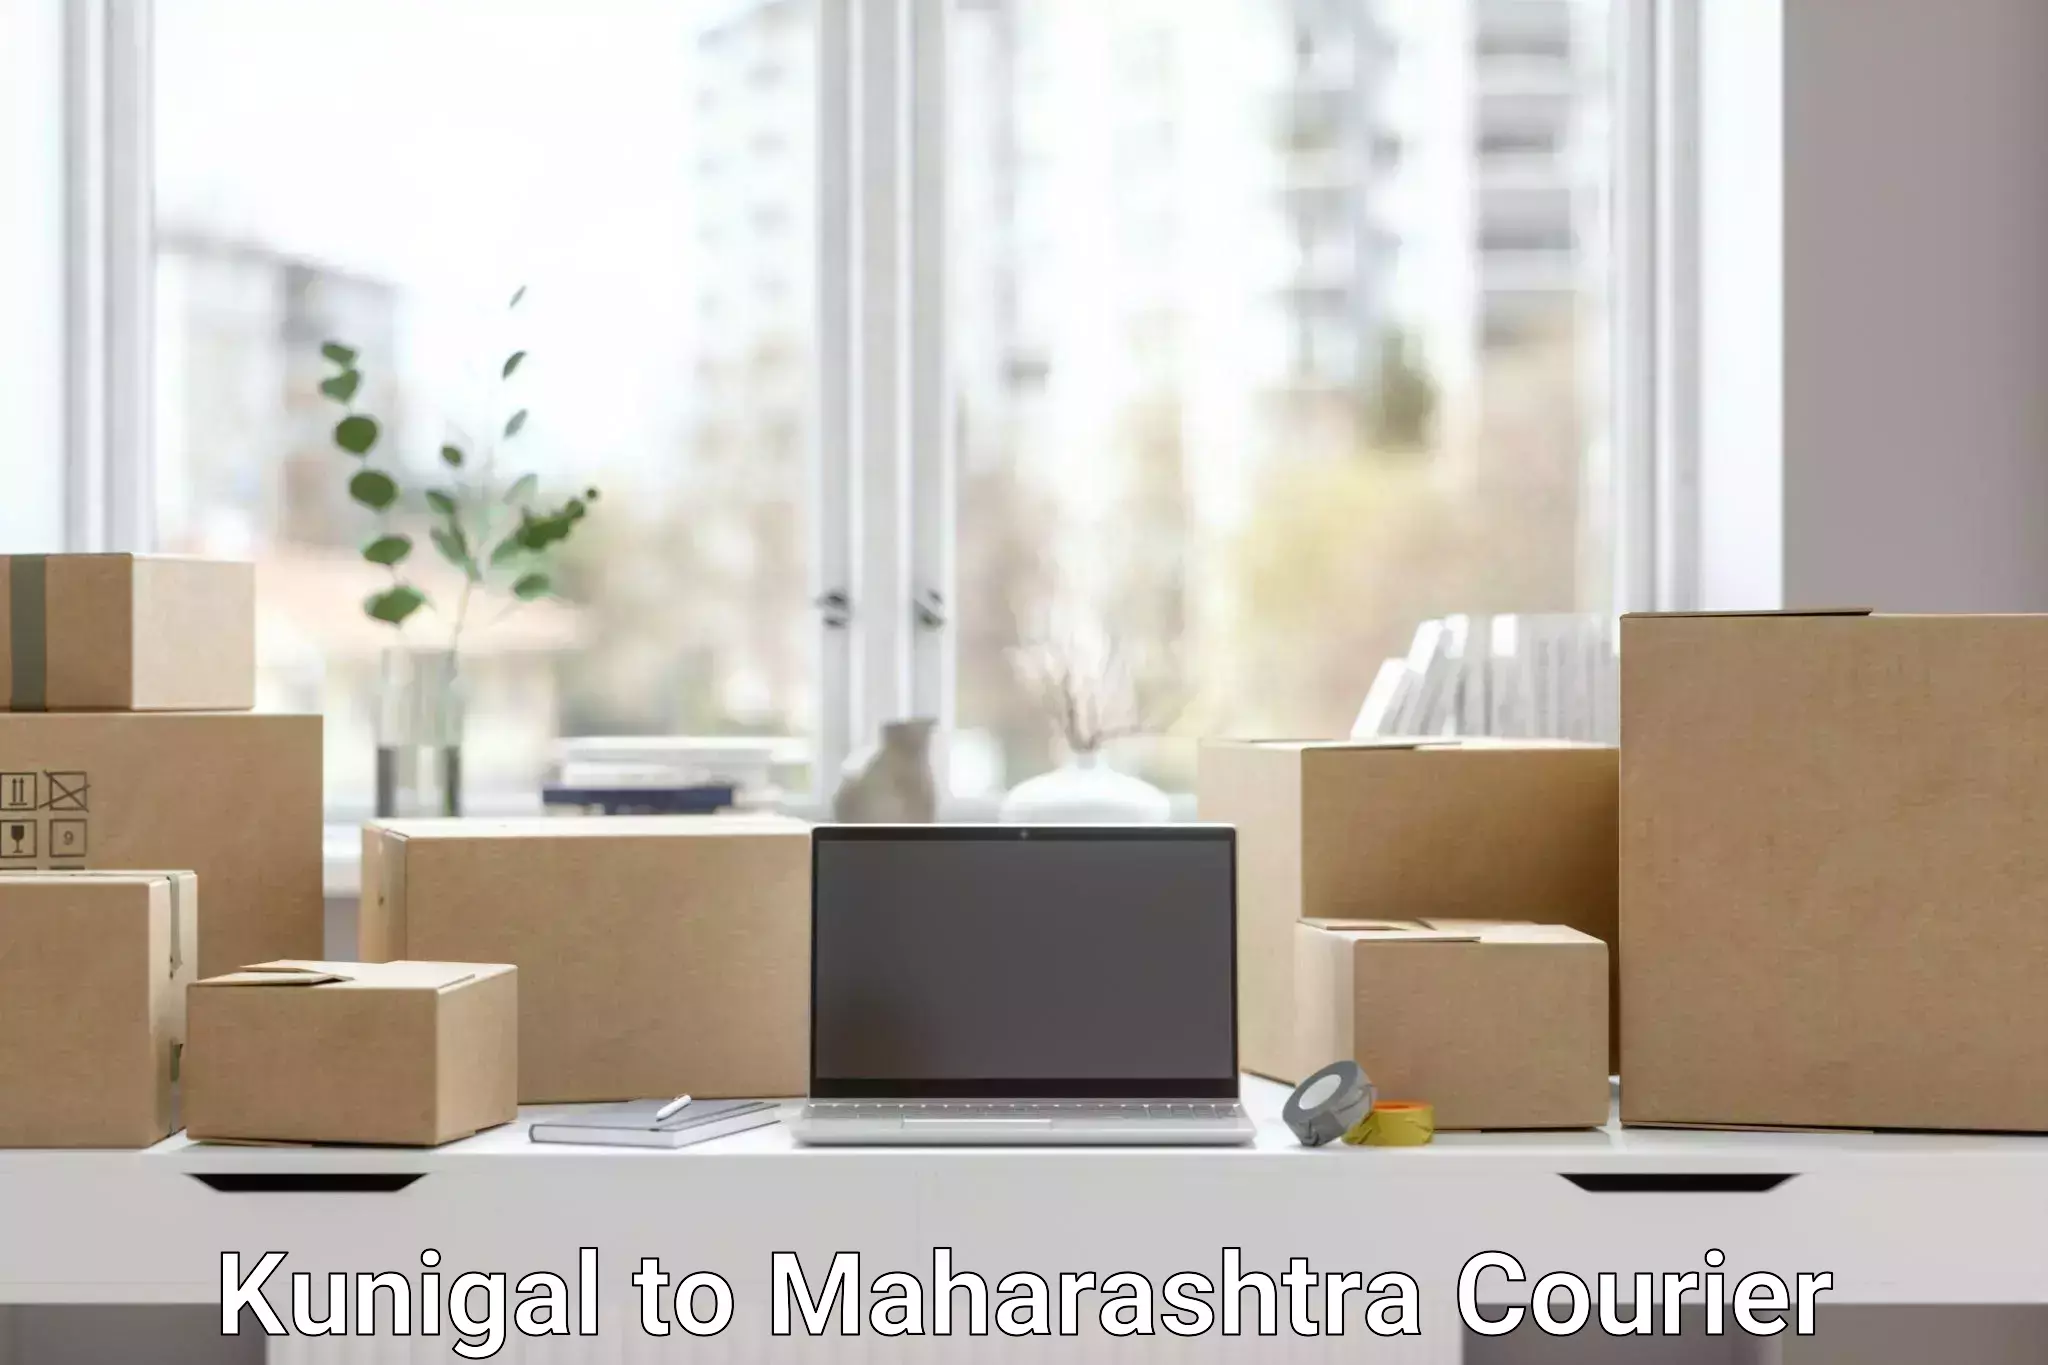 Pharmaceutical courier Kunigal to Mahabaleshwar